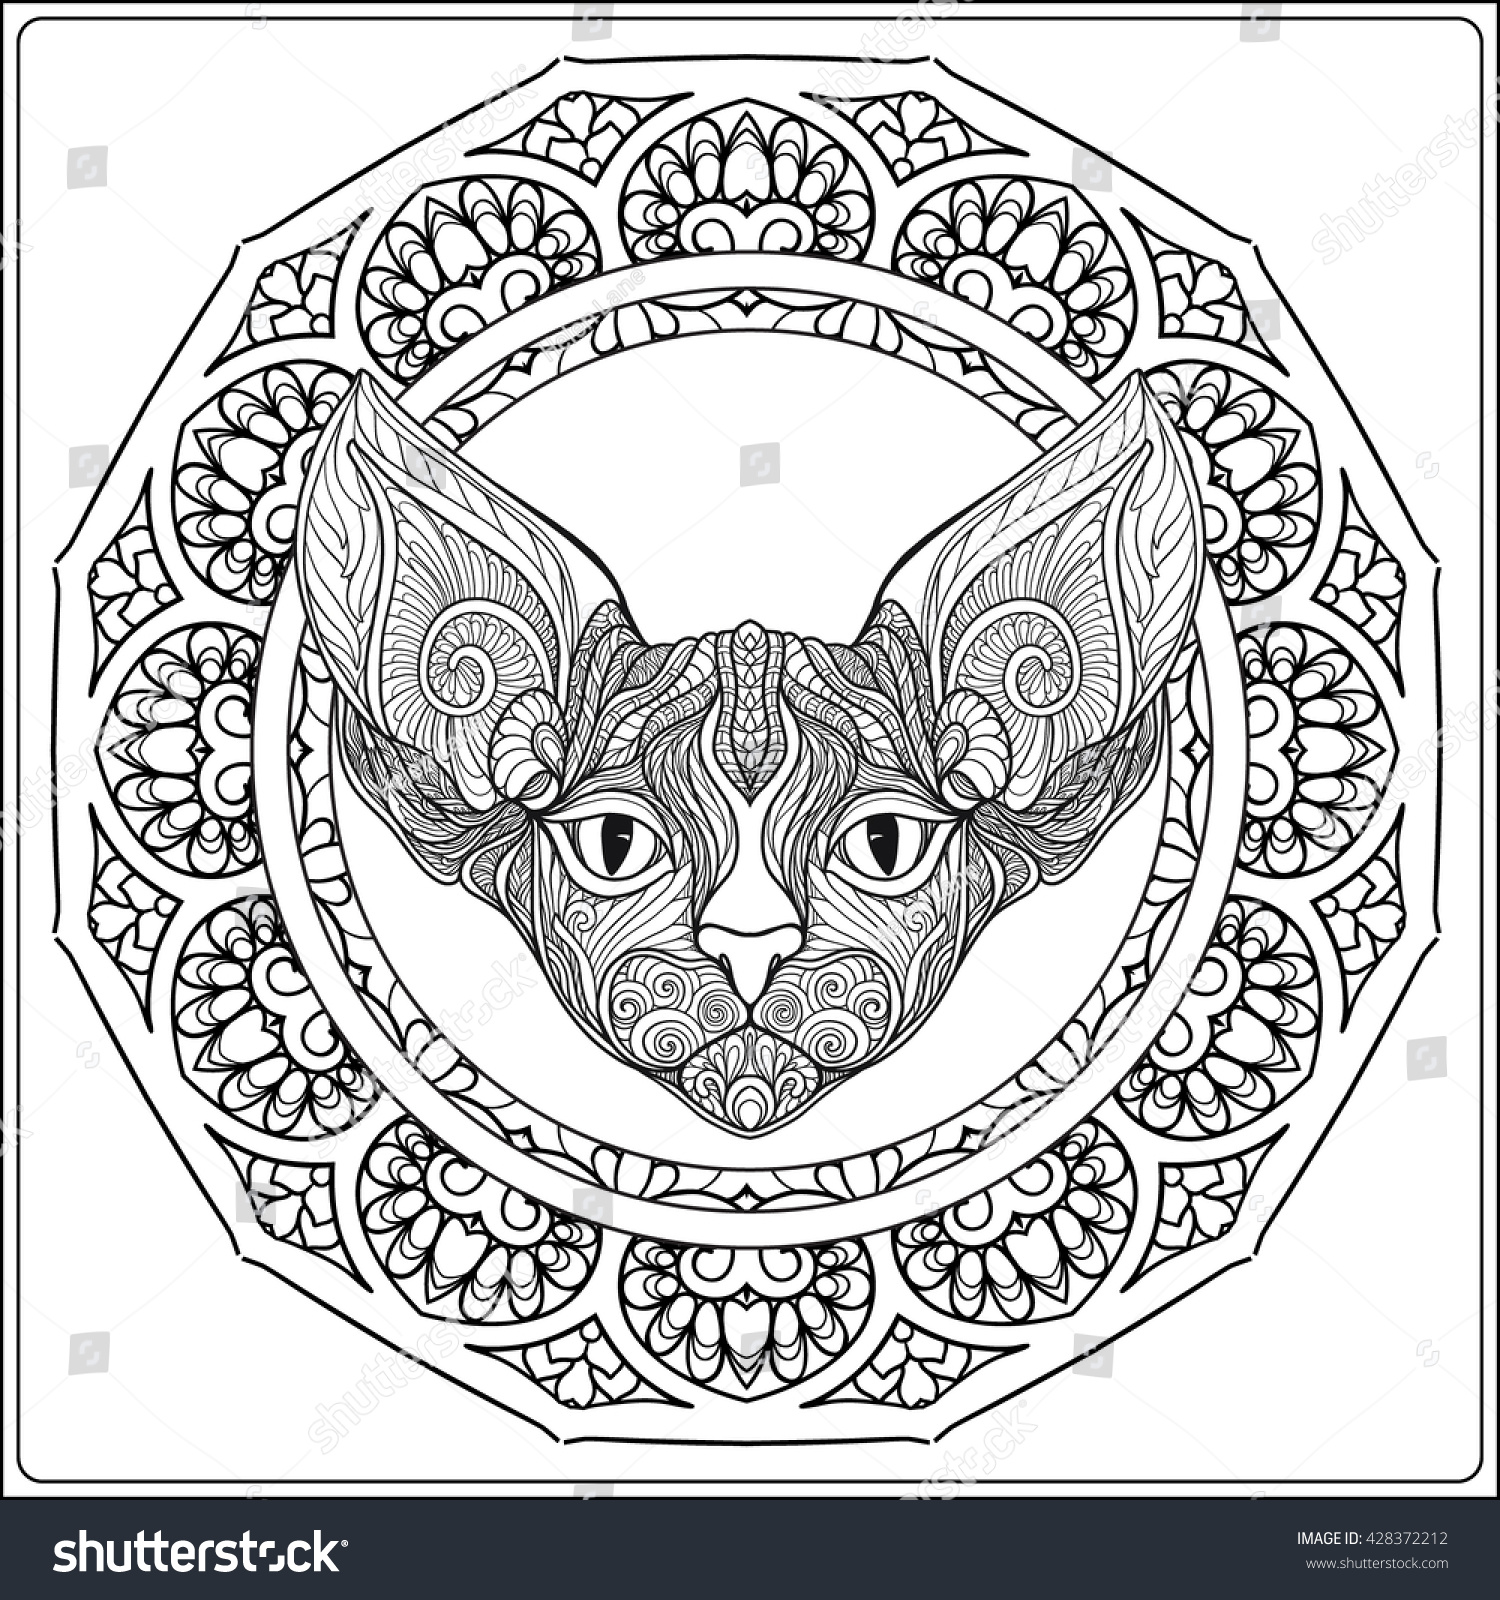 Download Decorative Cat Mandala Vector Illustration Adult Stock ...